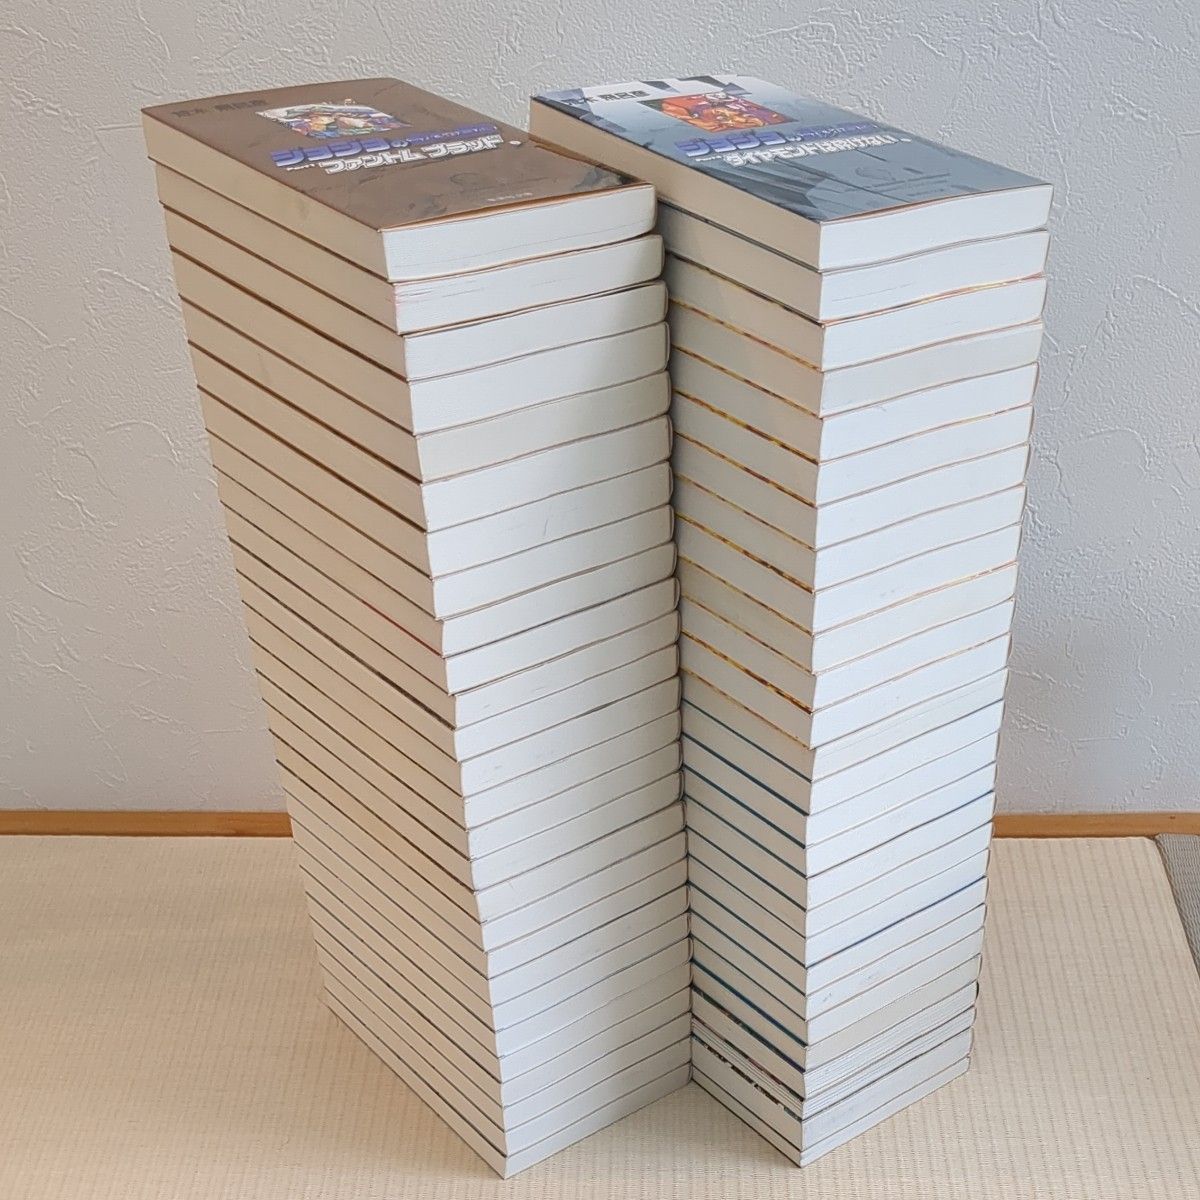 ジョジョの奇妙な冒険 　文庫版全50巻完結+関連本4冊　 荒木飛呂彦